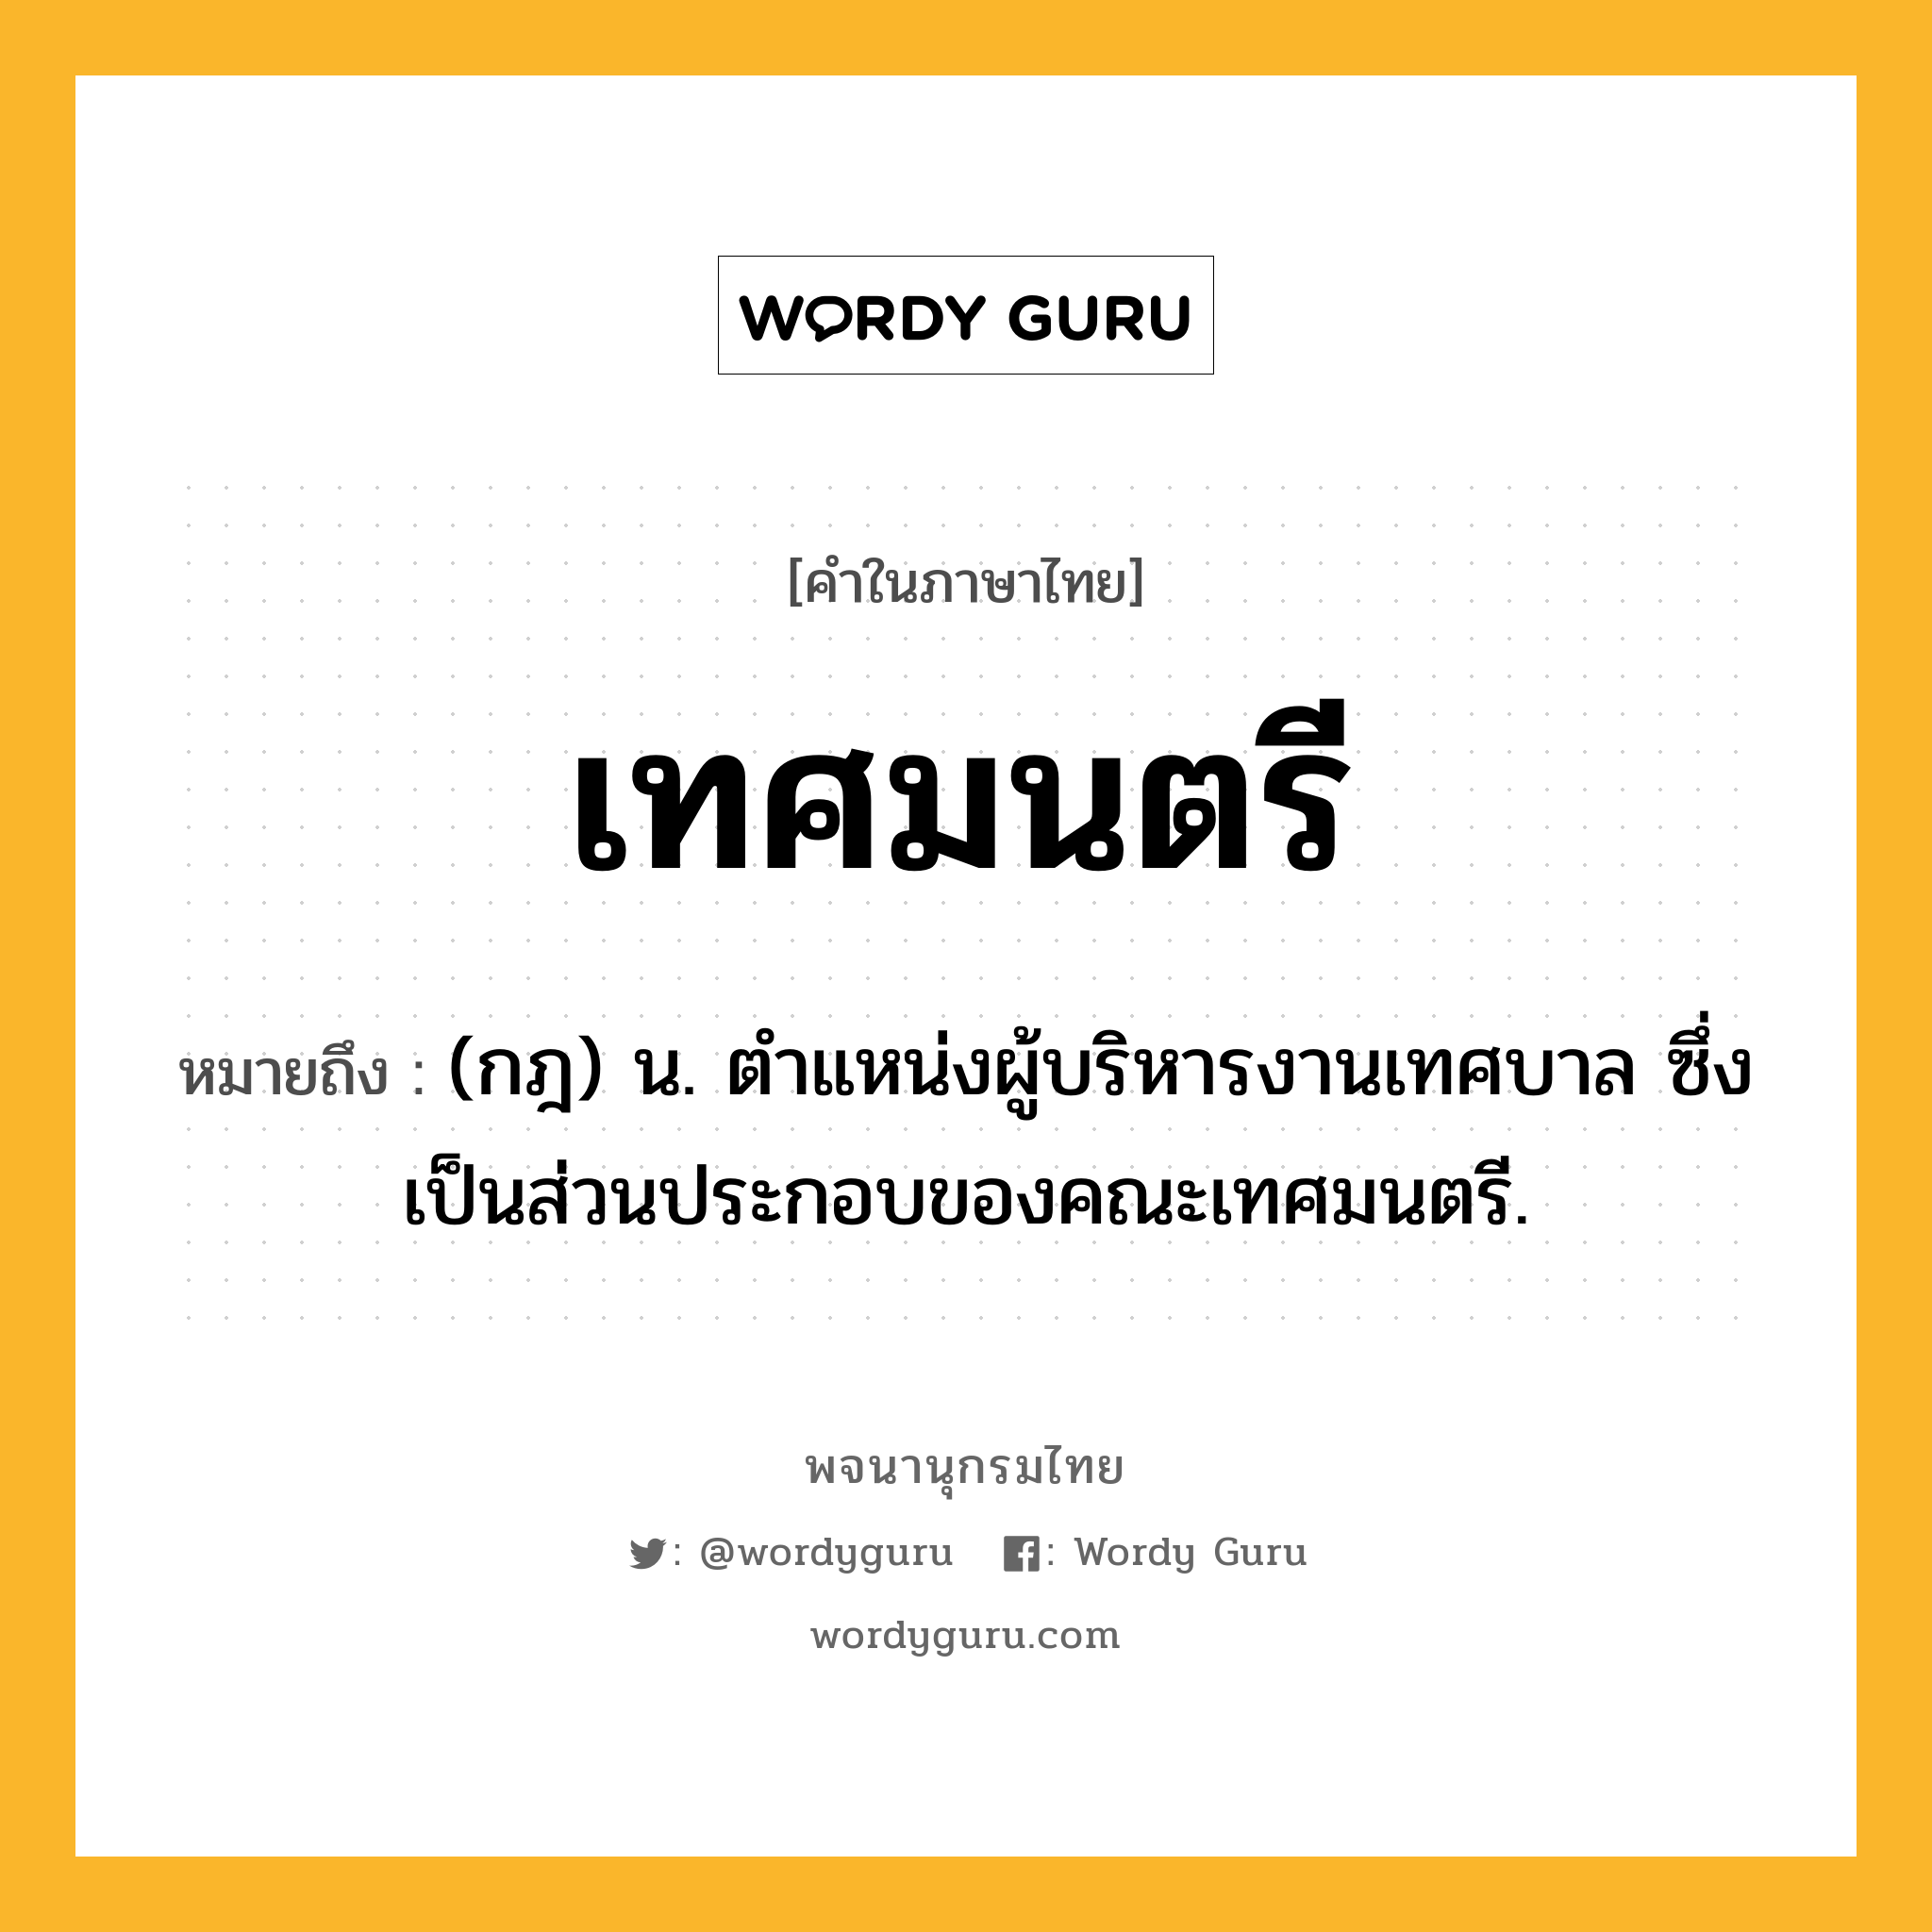 เทศมนตรี หมายถึงอะไร?, คำในภาษาไทย เทศมนตรี หมายถึง (กฎ) น. ตําแหน่งผู้บริหารงานเทศบาล ซึ่งเป็นส่วนประกอบของคณะเทศมนตรี.